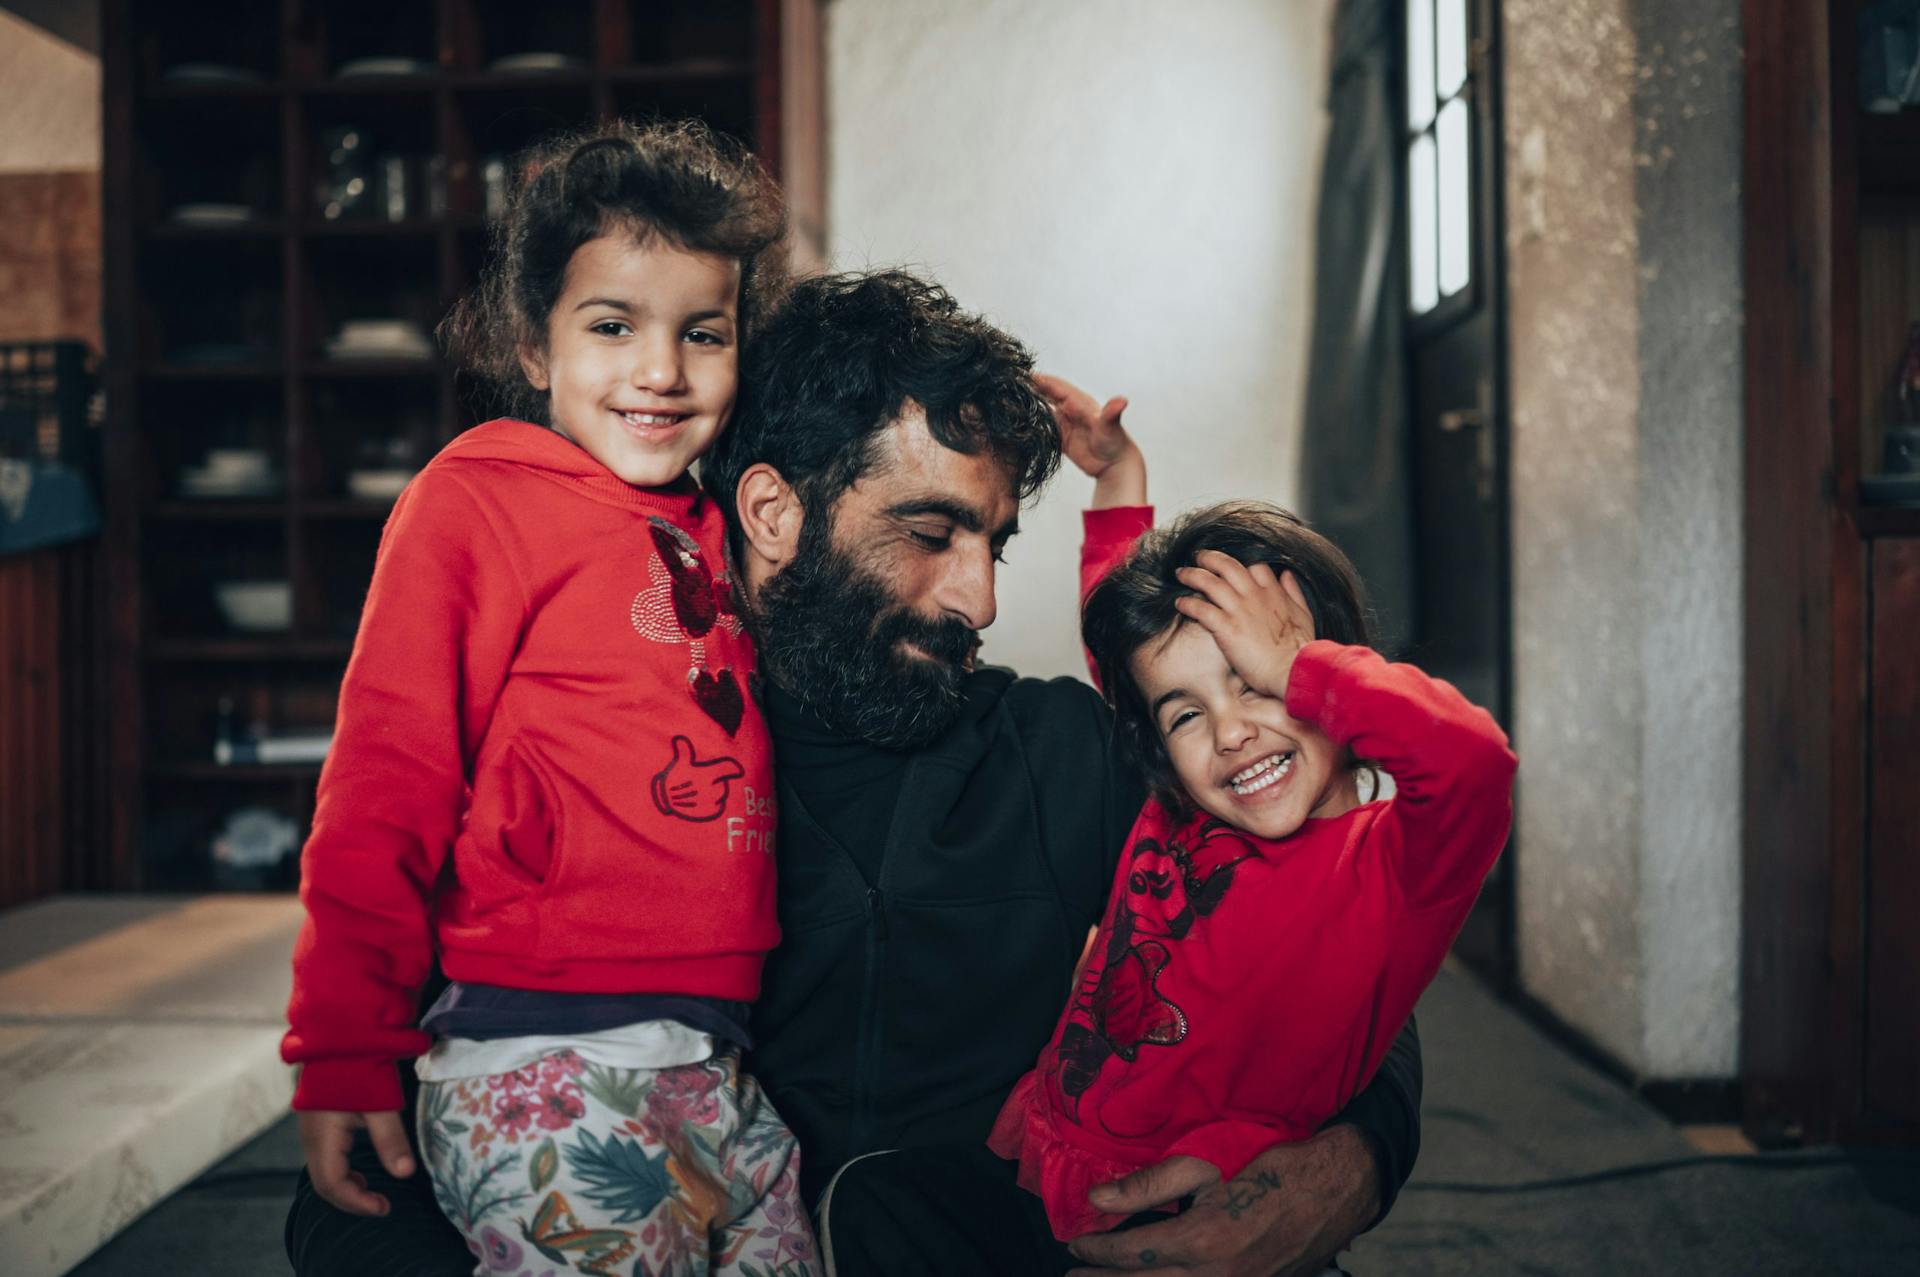 Familie Almousa is gevlucht uit Syrië, de vader van het gezin staat op de foto met twee van zijn dochters in Griekenland waar ze naartoe zijn gevlucht